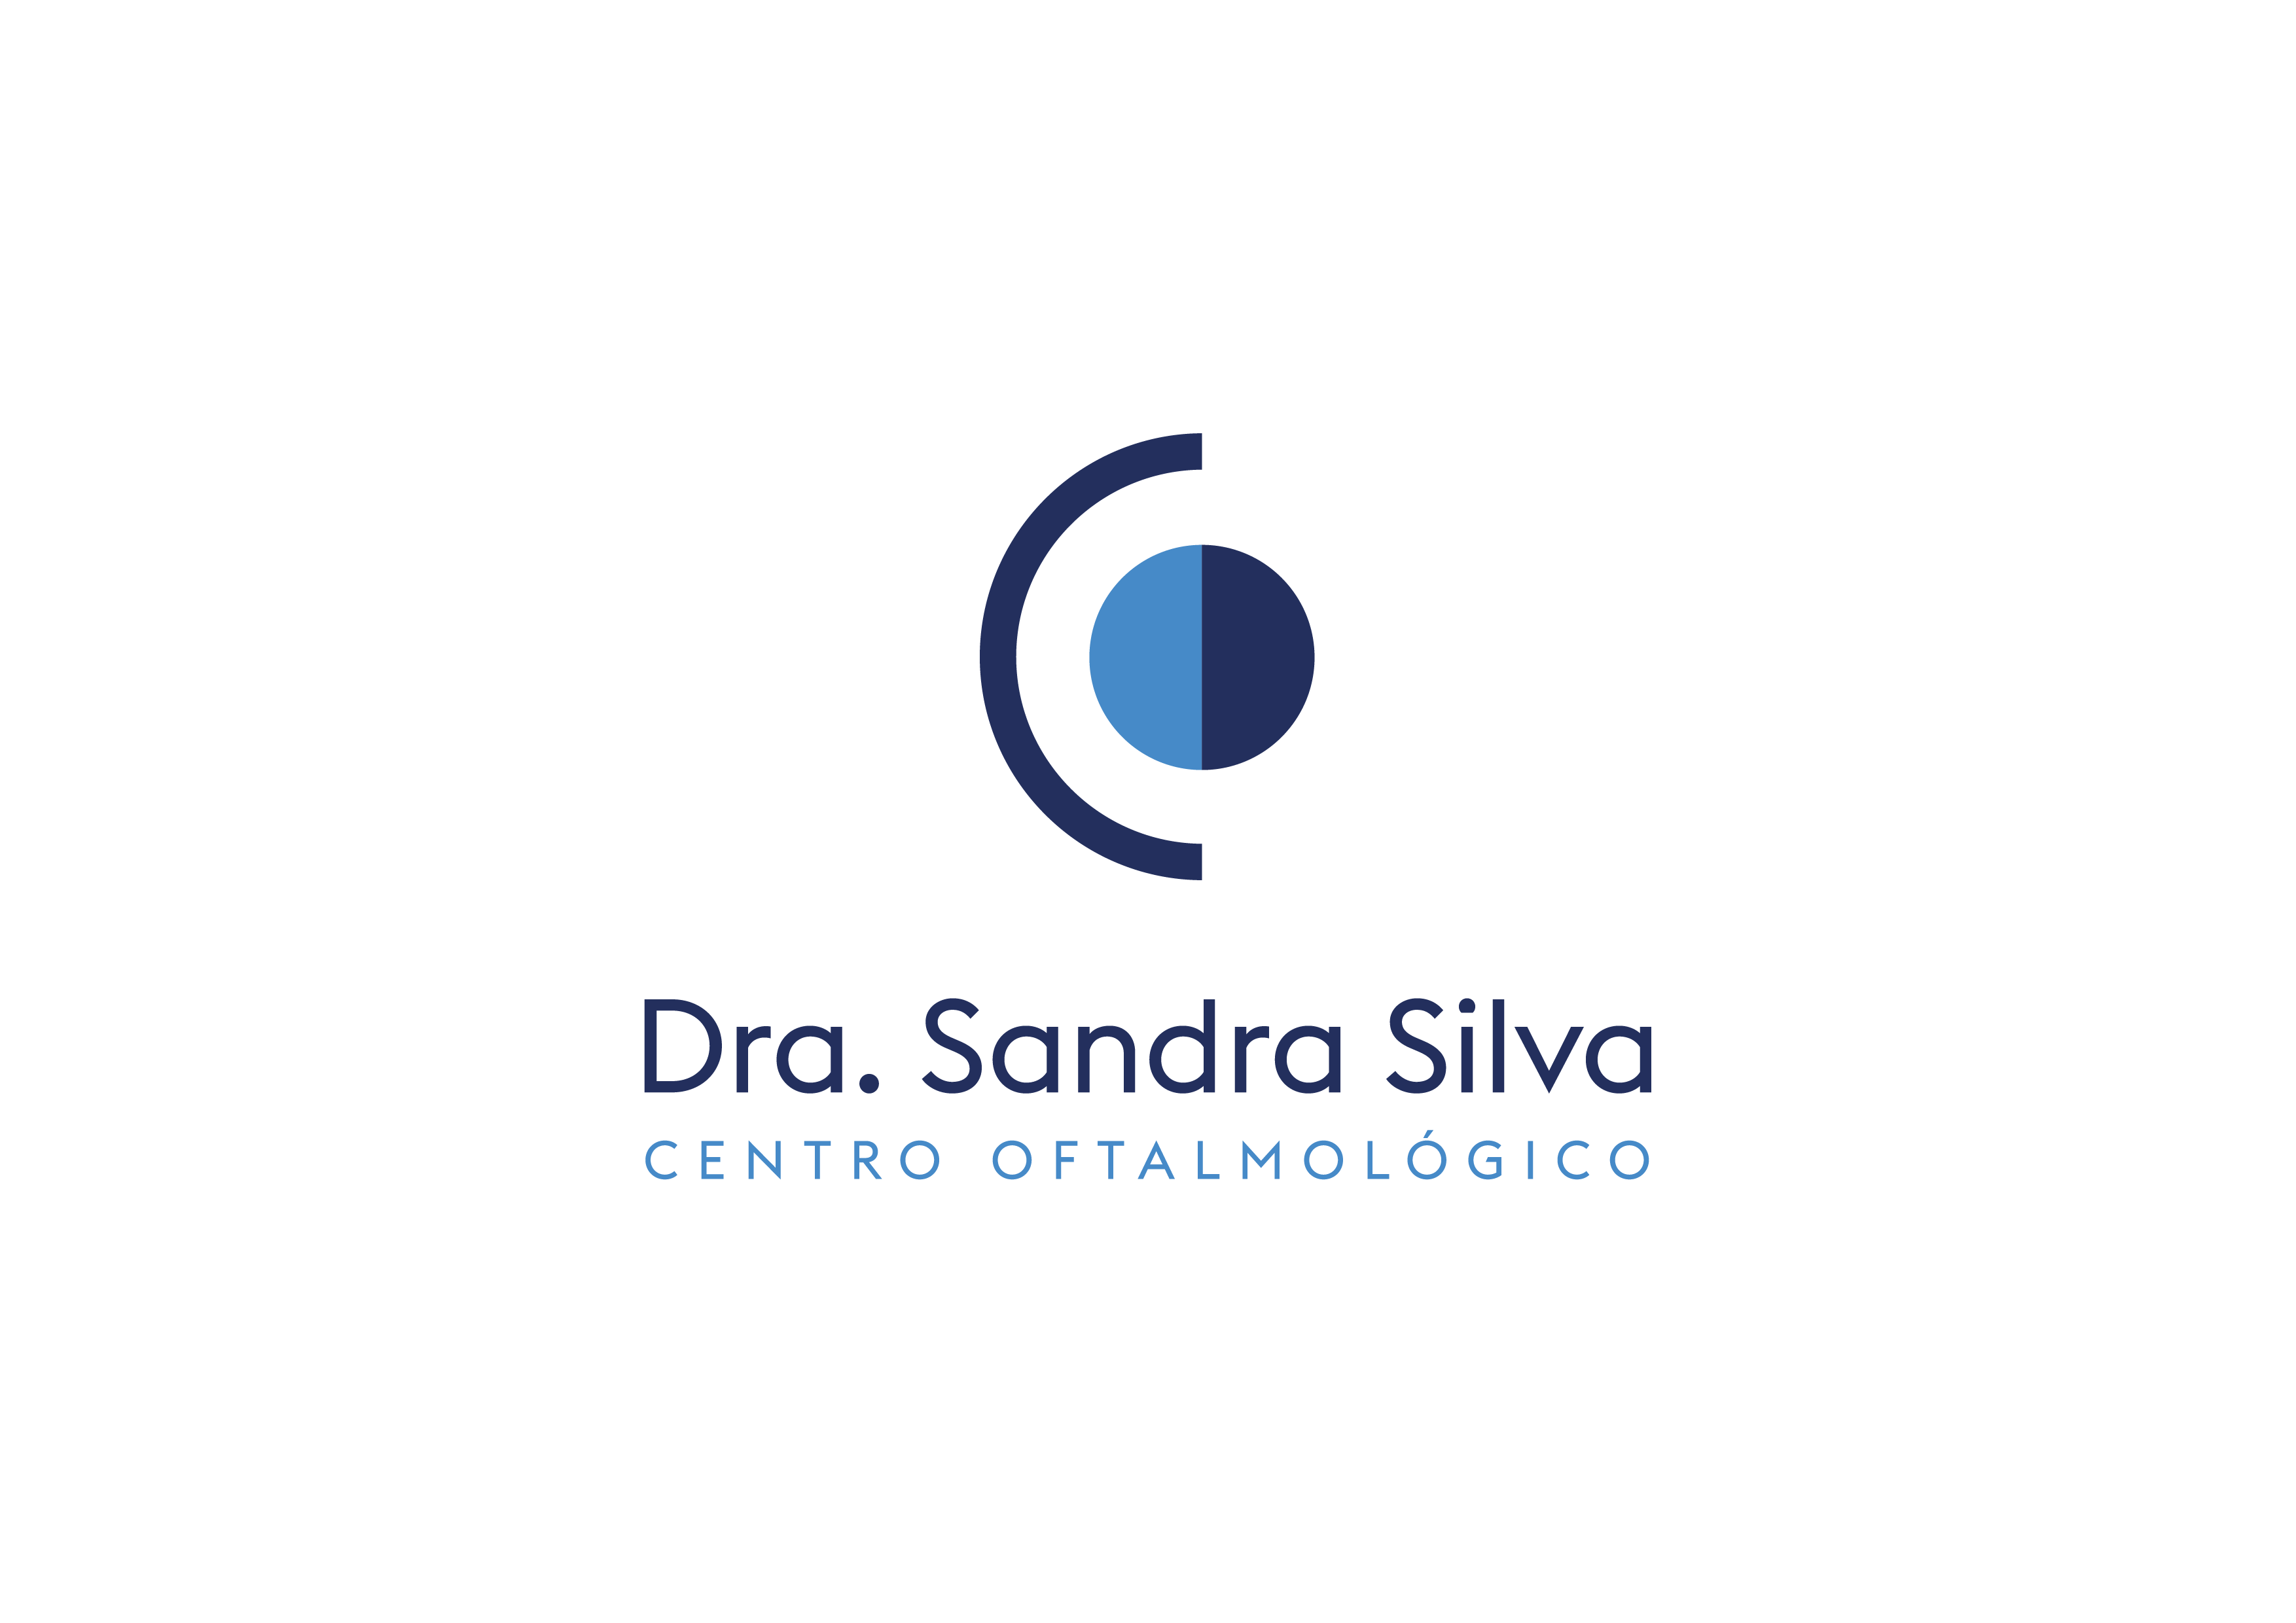 Logotipo de la clínica CENTRO OFTALMOLÓGICO DRA. SILVA